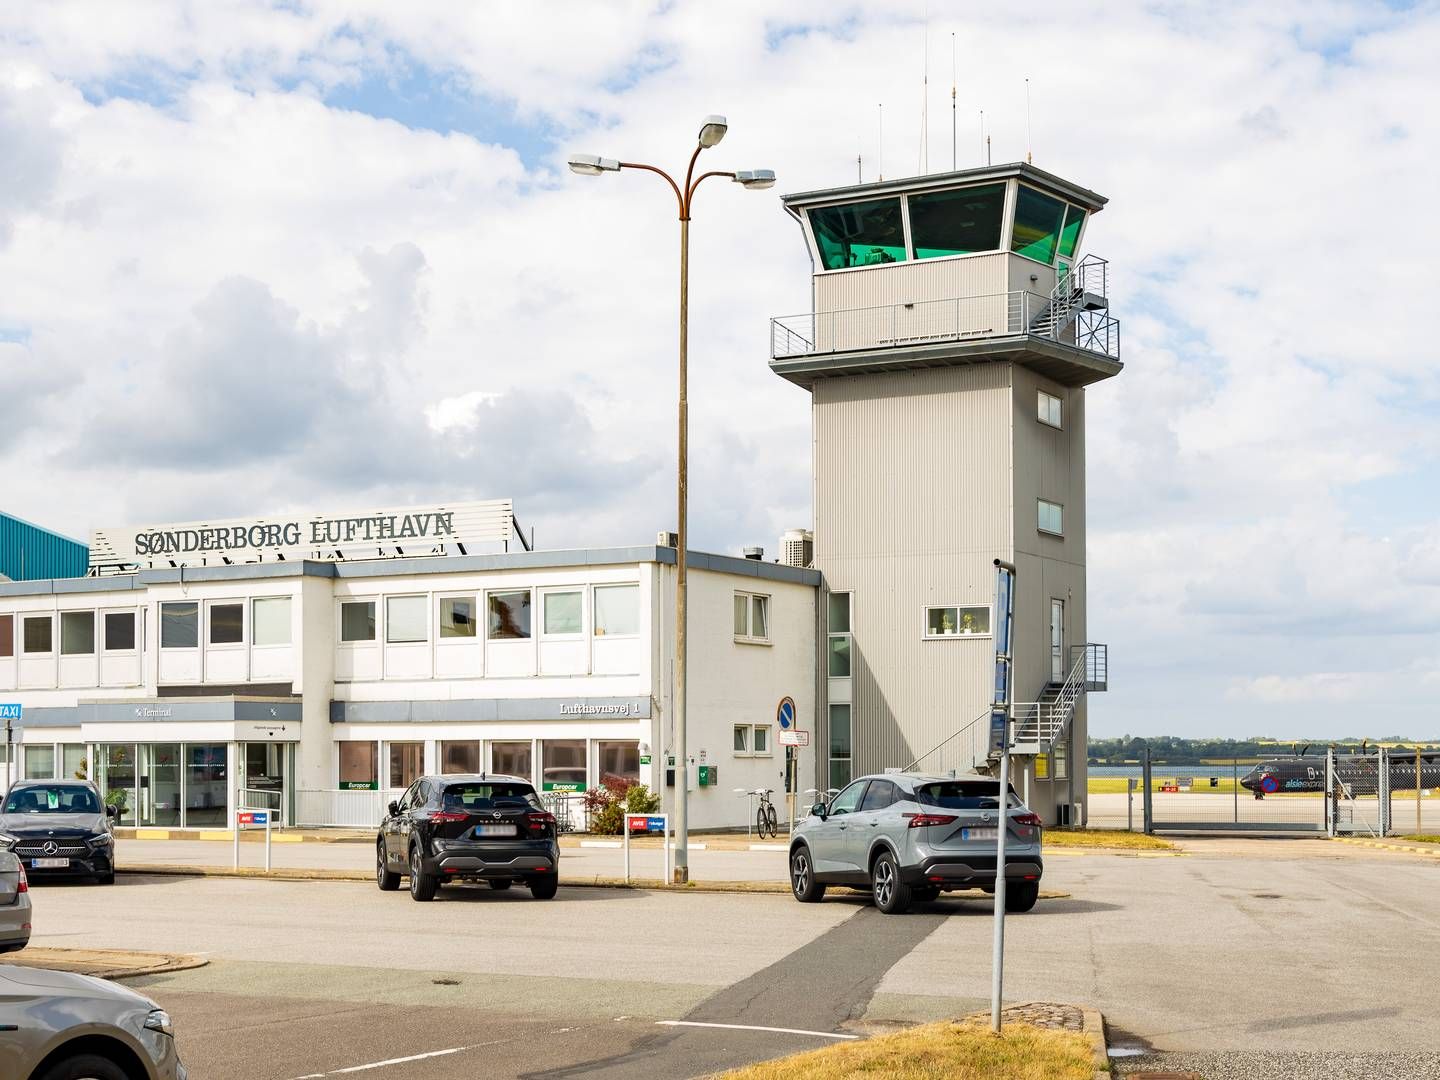 Lufthavnen skal hen over de kommende år gå igennem en omsiggribende forandring. | Foto: Pr / Kim Toft Jørgensen for Sønderborg Kommune